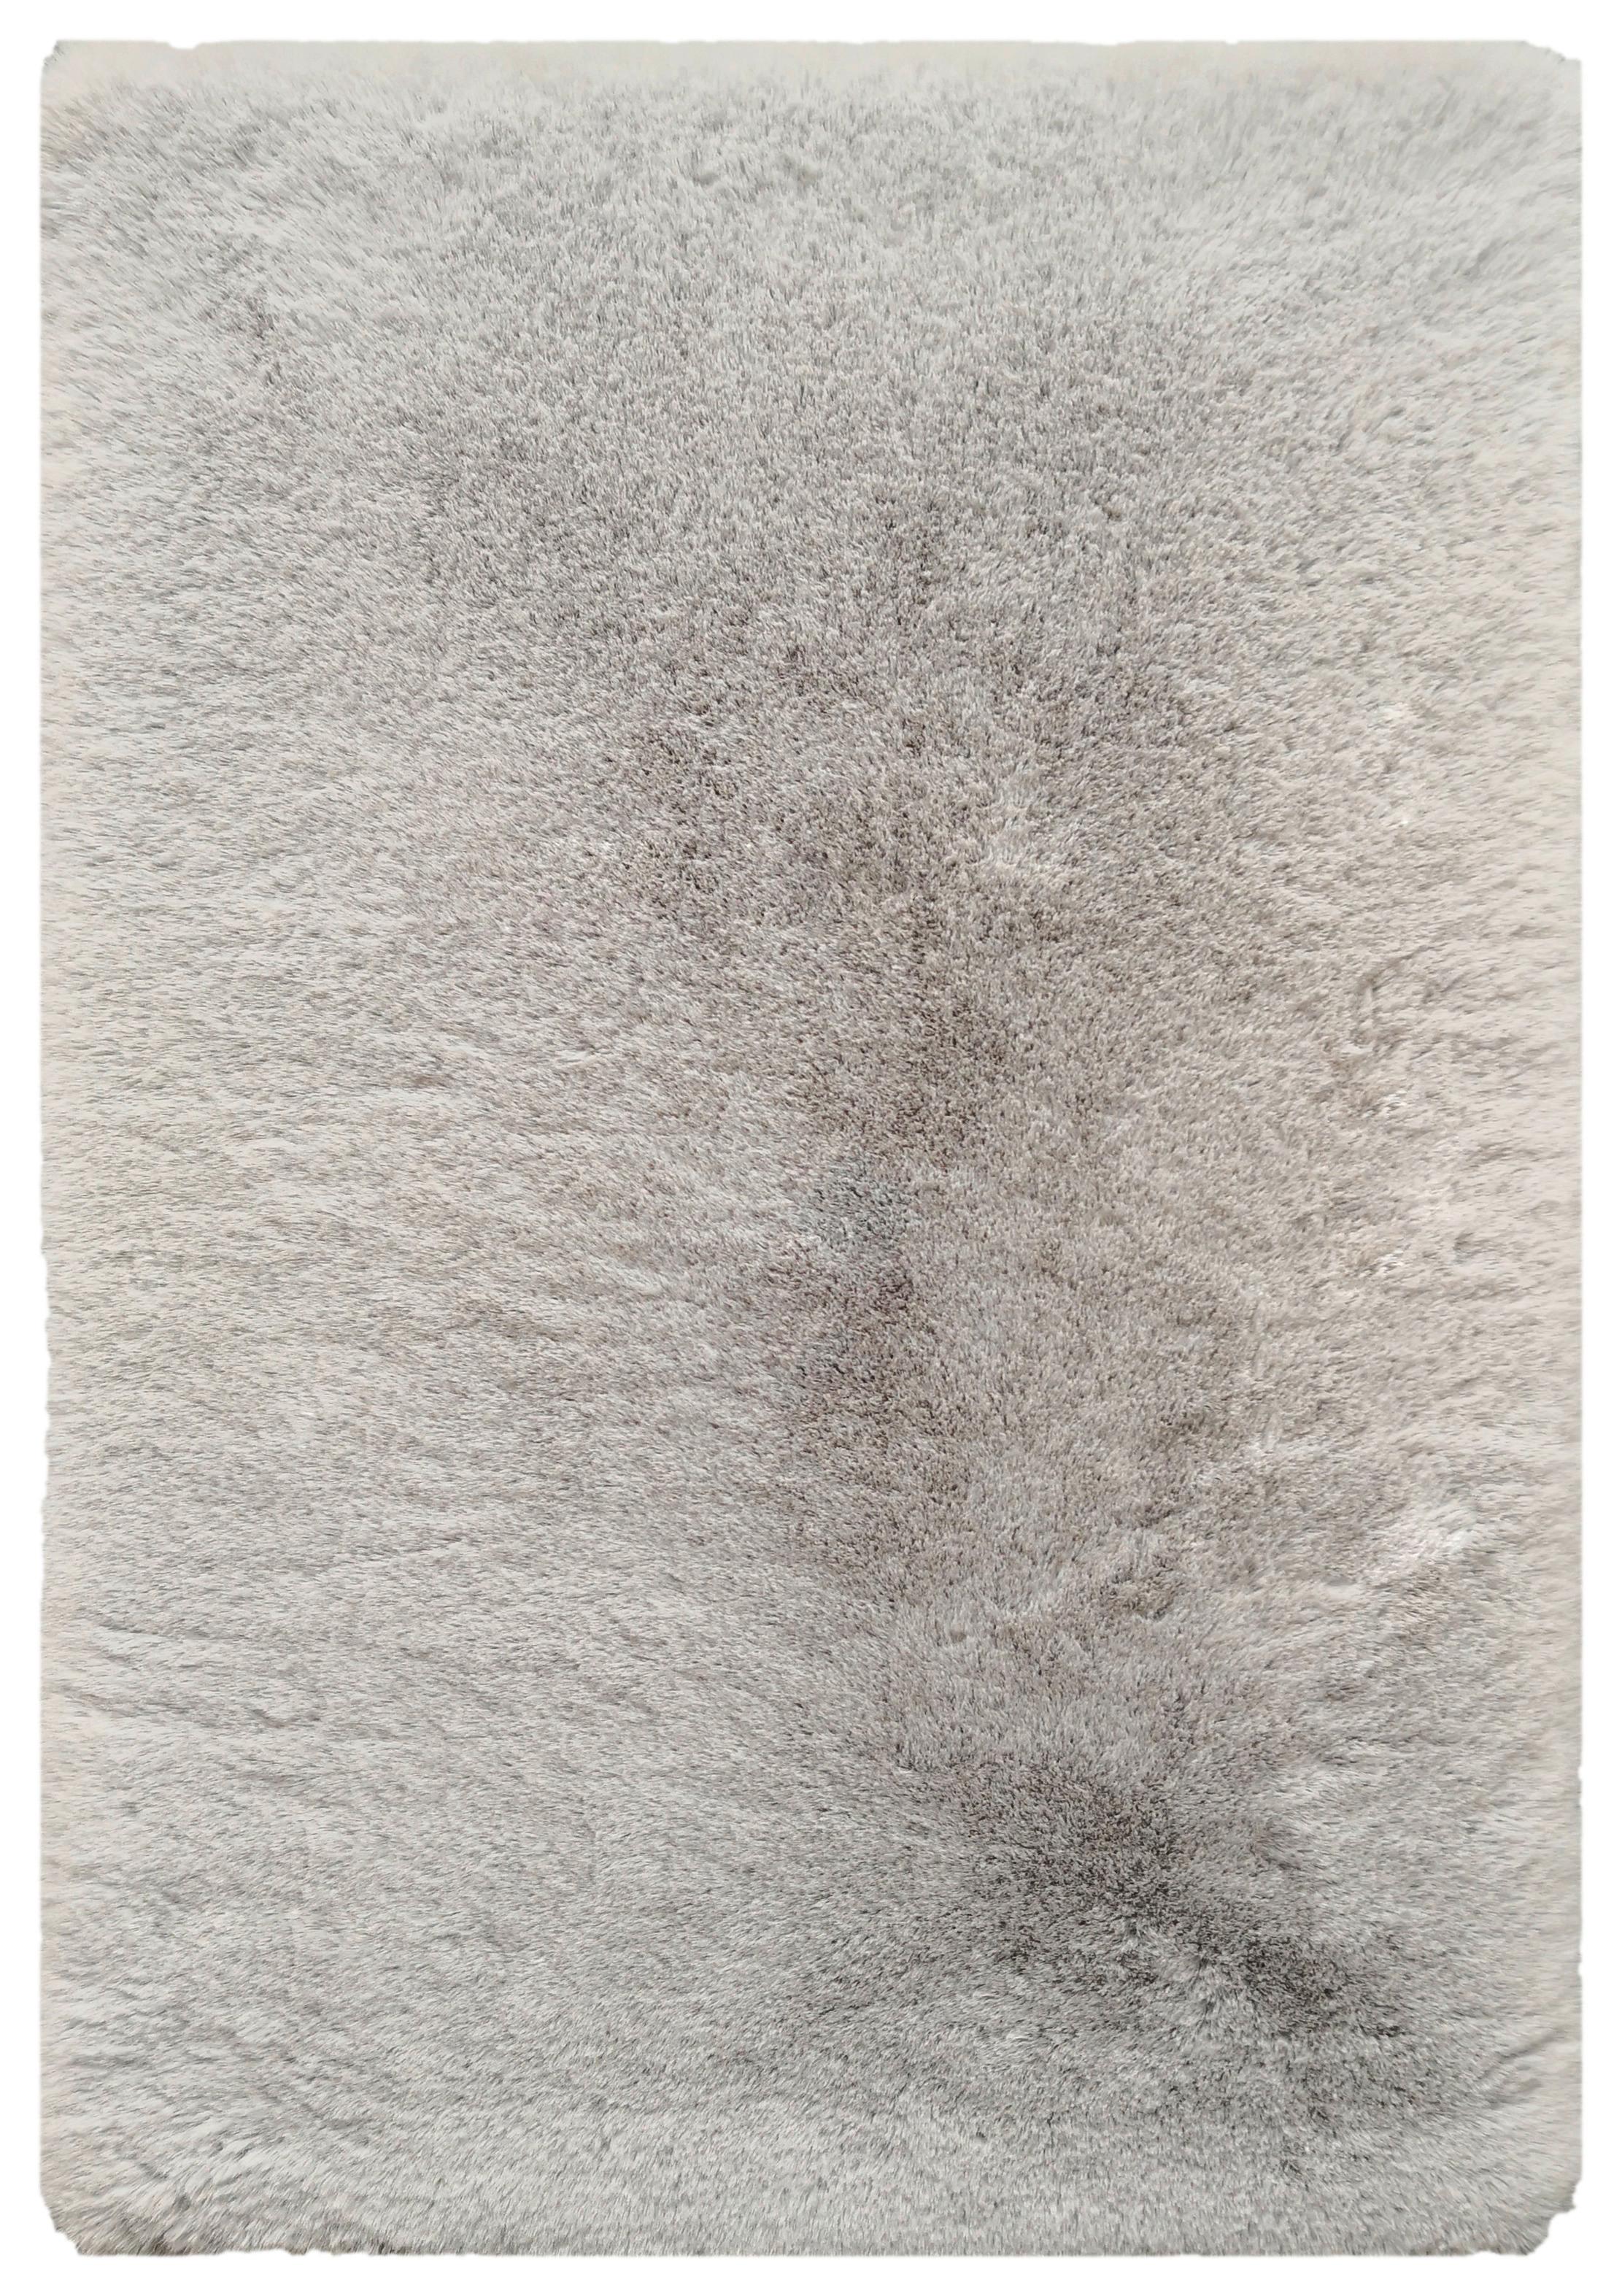 Umjetno Krzno Caroline 3 -Akt- - srebrne boje, tekstil (160/220cm) - Modern Living